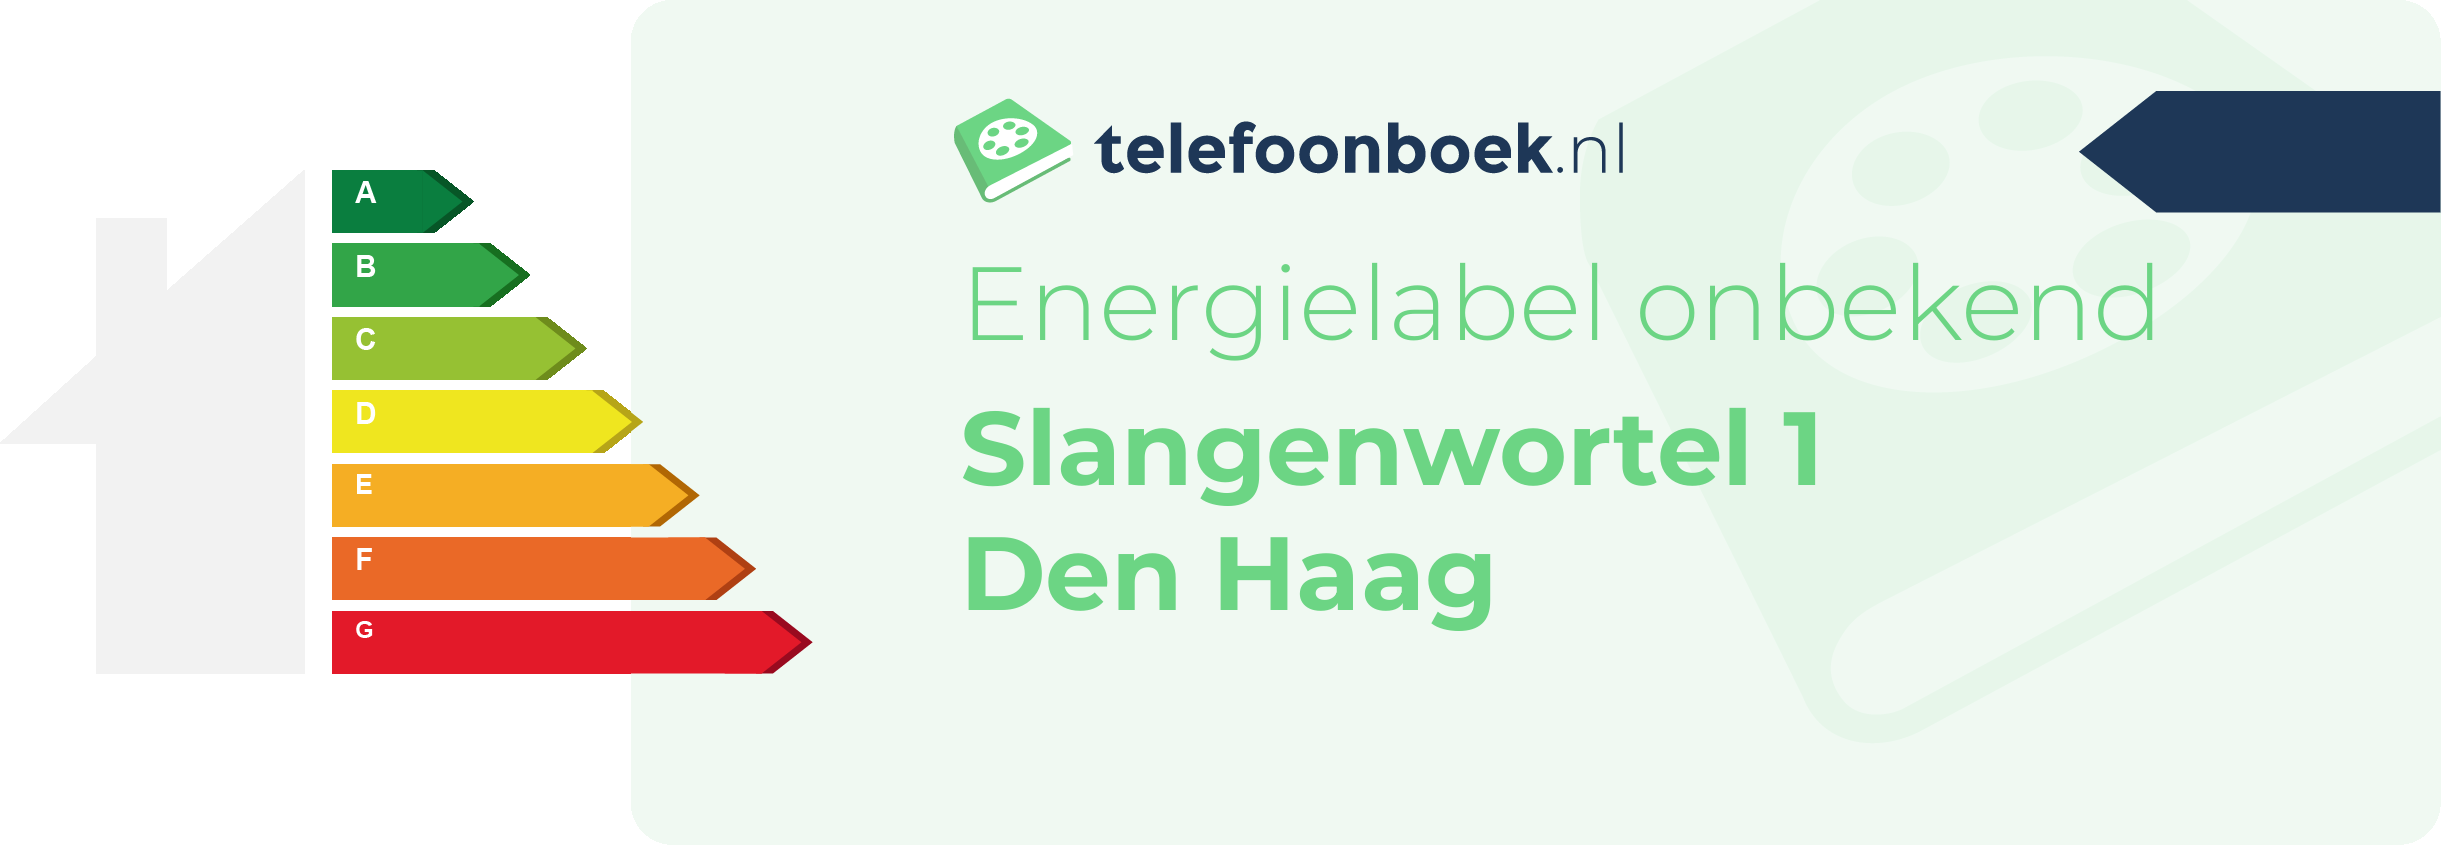 Energielabel Slangenwortel 1 Den Haag